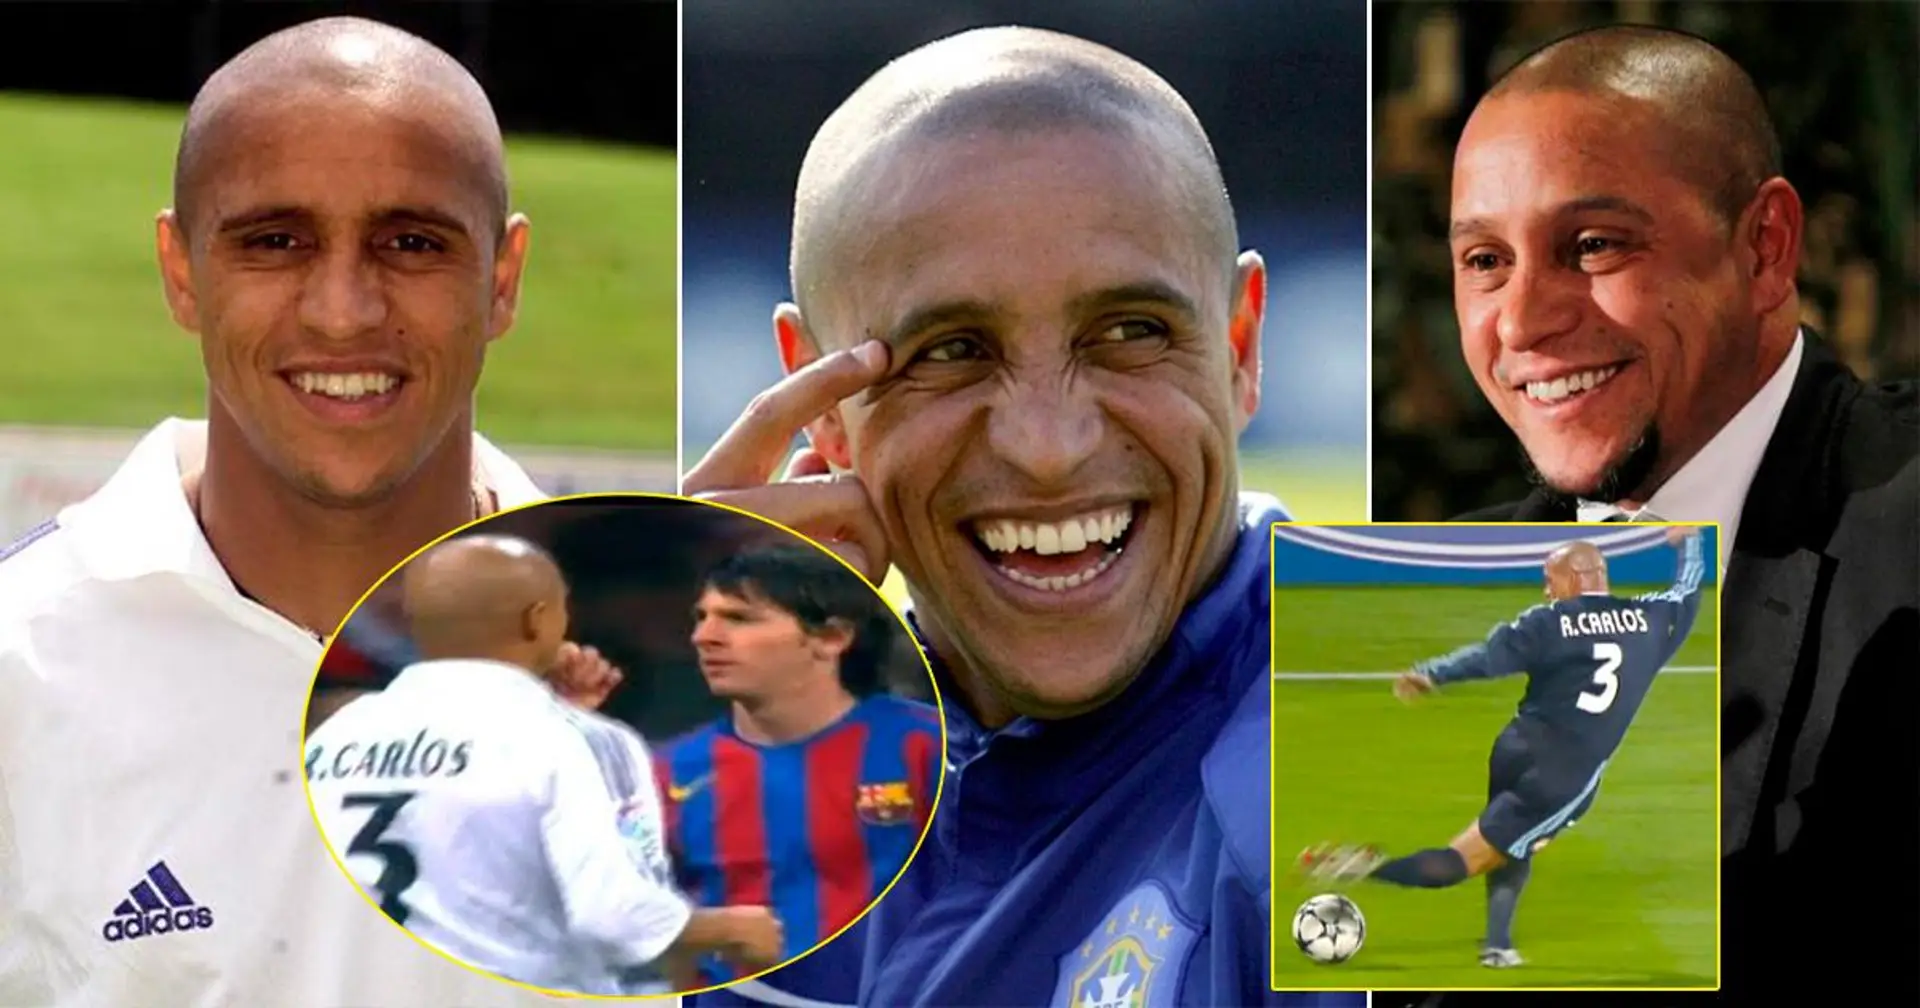 "Je n'ai aucune raison d'être triste": Roberto Carlos dévoile le secret de son sourire éclatant